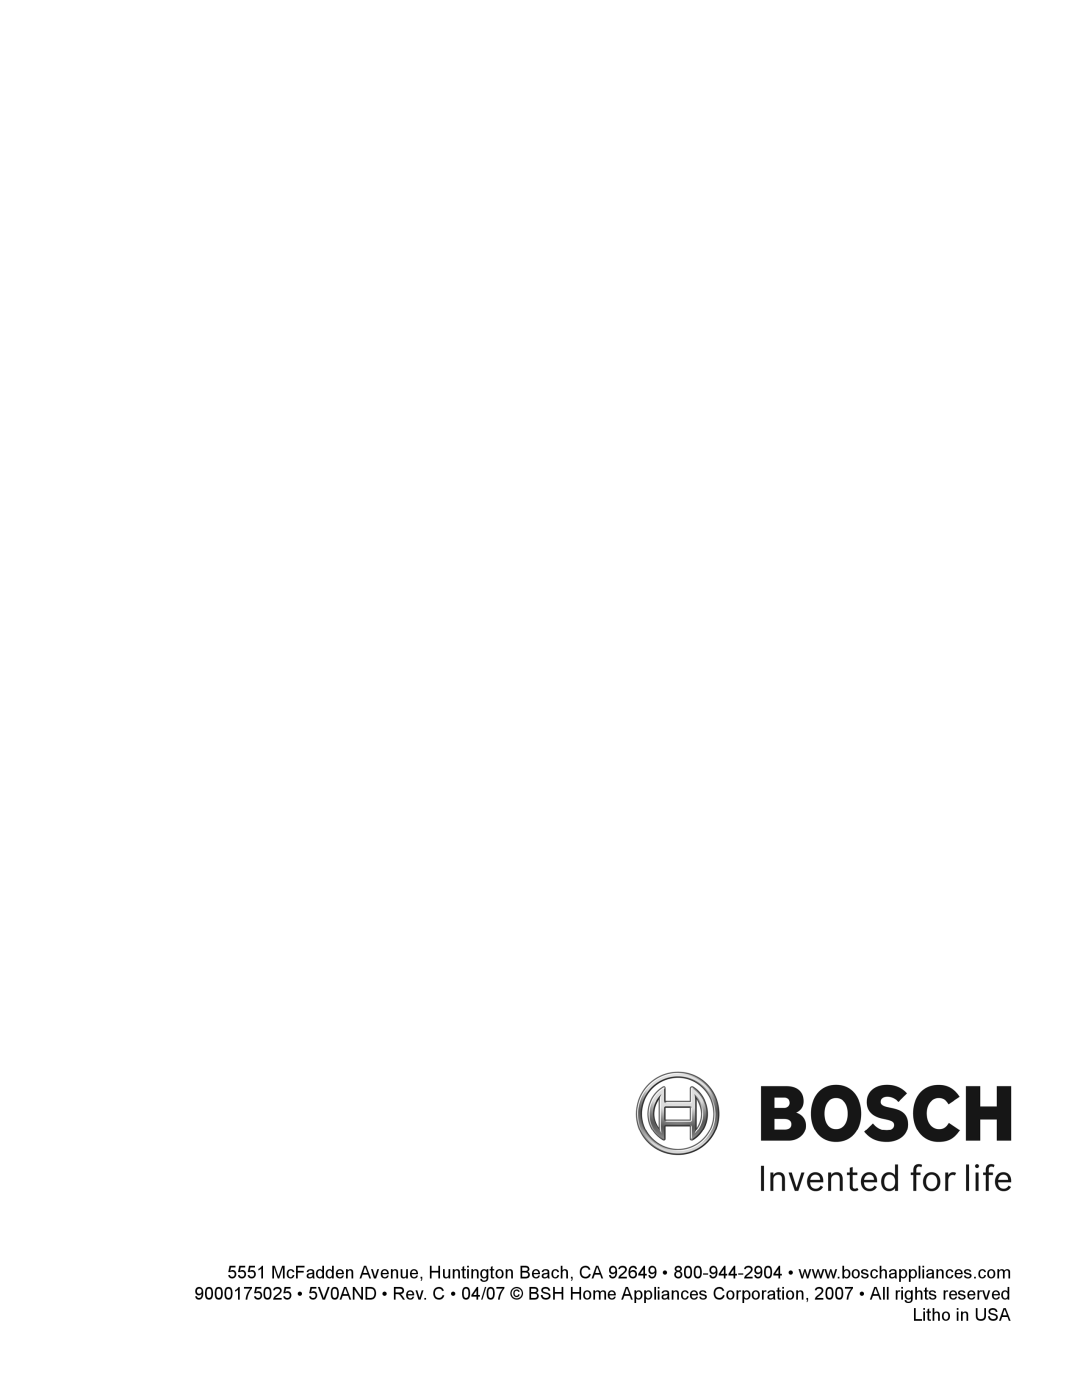 Bosch Appliances HBL57, HBL56, HBN56, HBN54 manual 